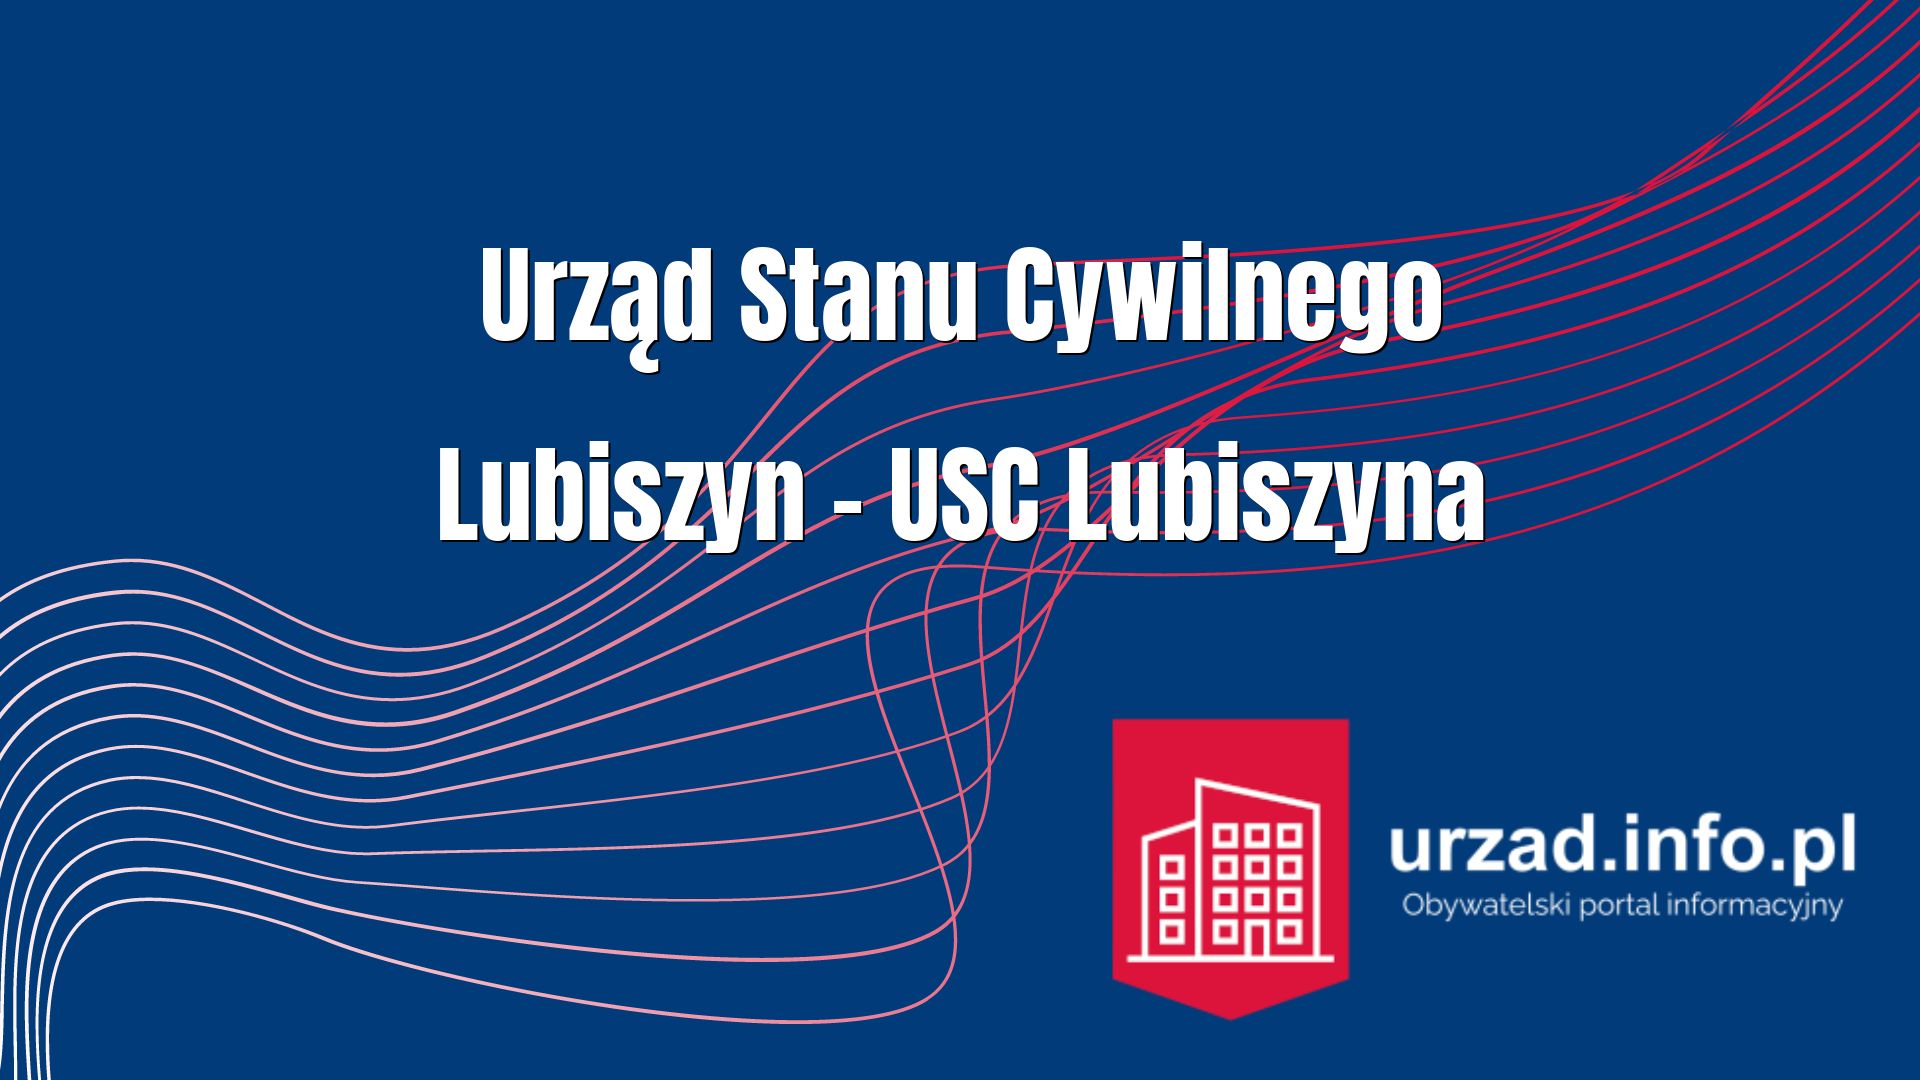 Urząd Stanu Cywilnego Lubiszyn – USC Lubiszyna